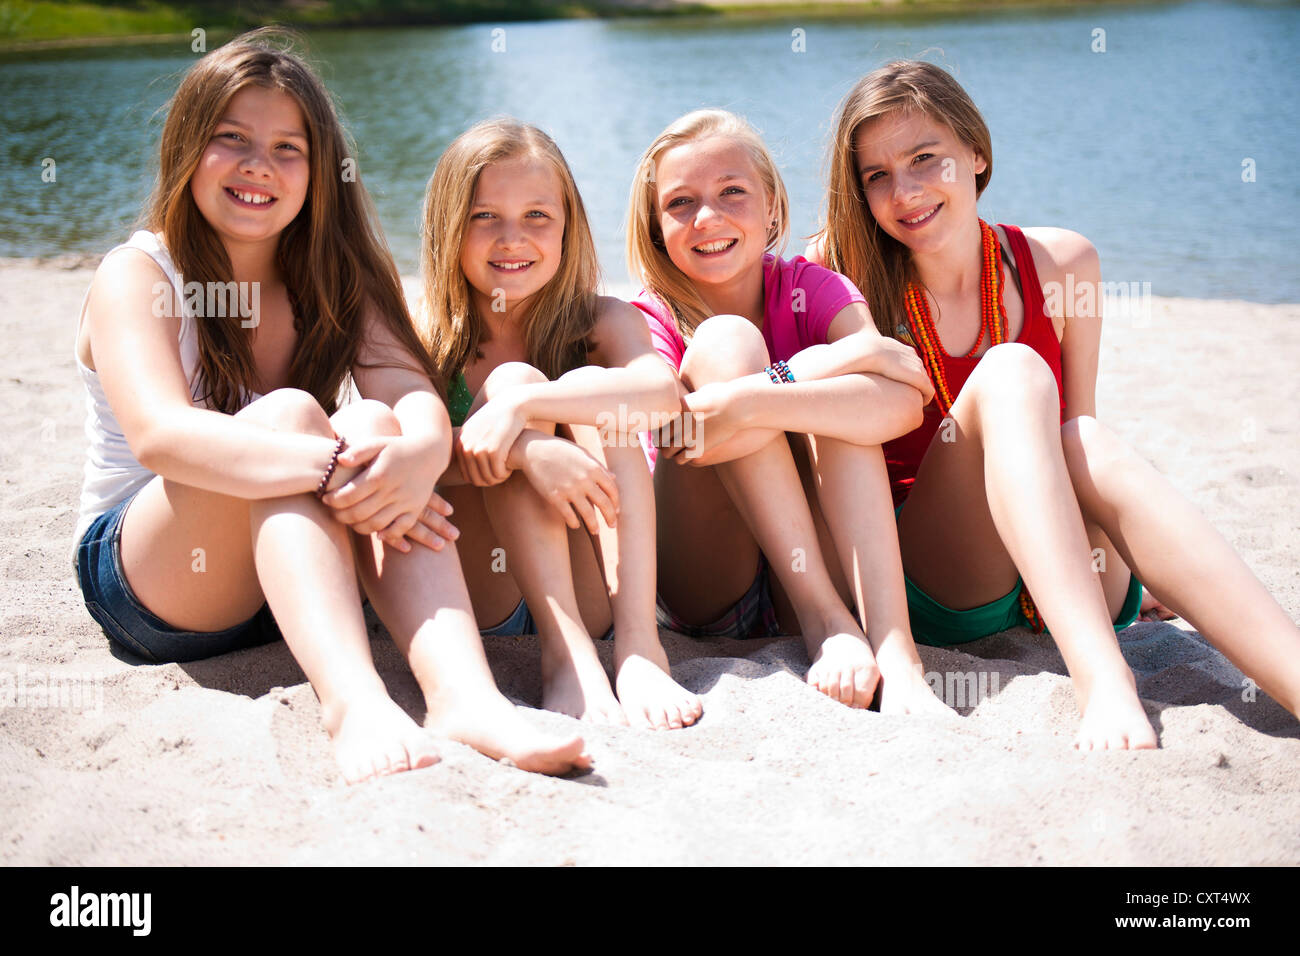 Gruppe Von Mädchen Am Strand Eines Sees Sitzen Stockfotografie Alamy 